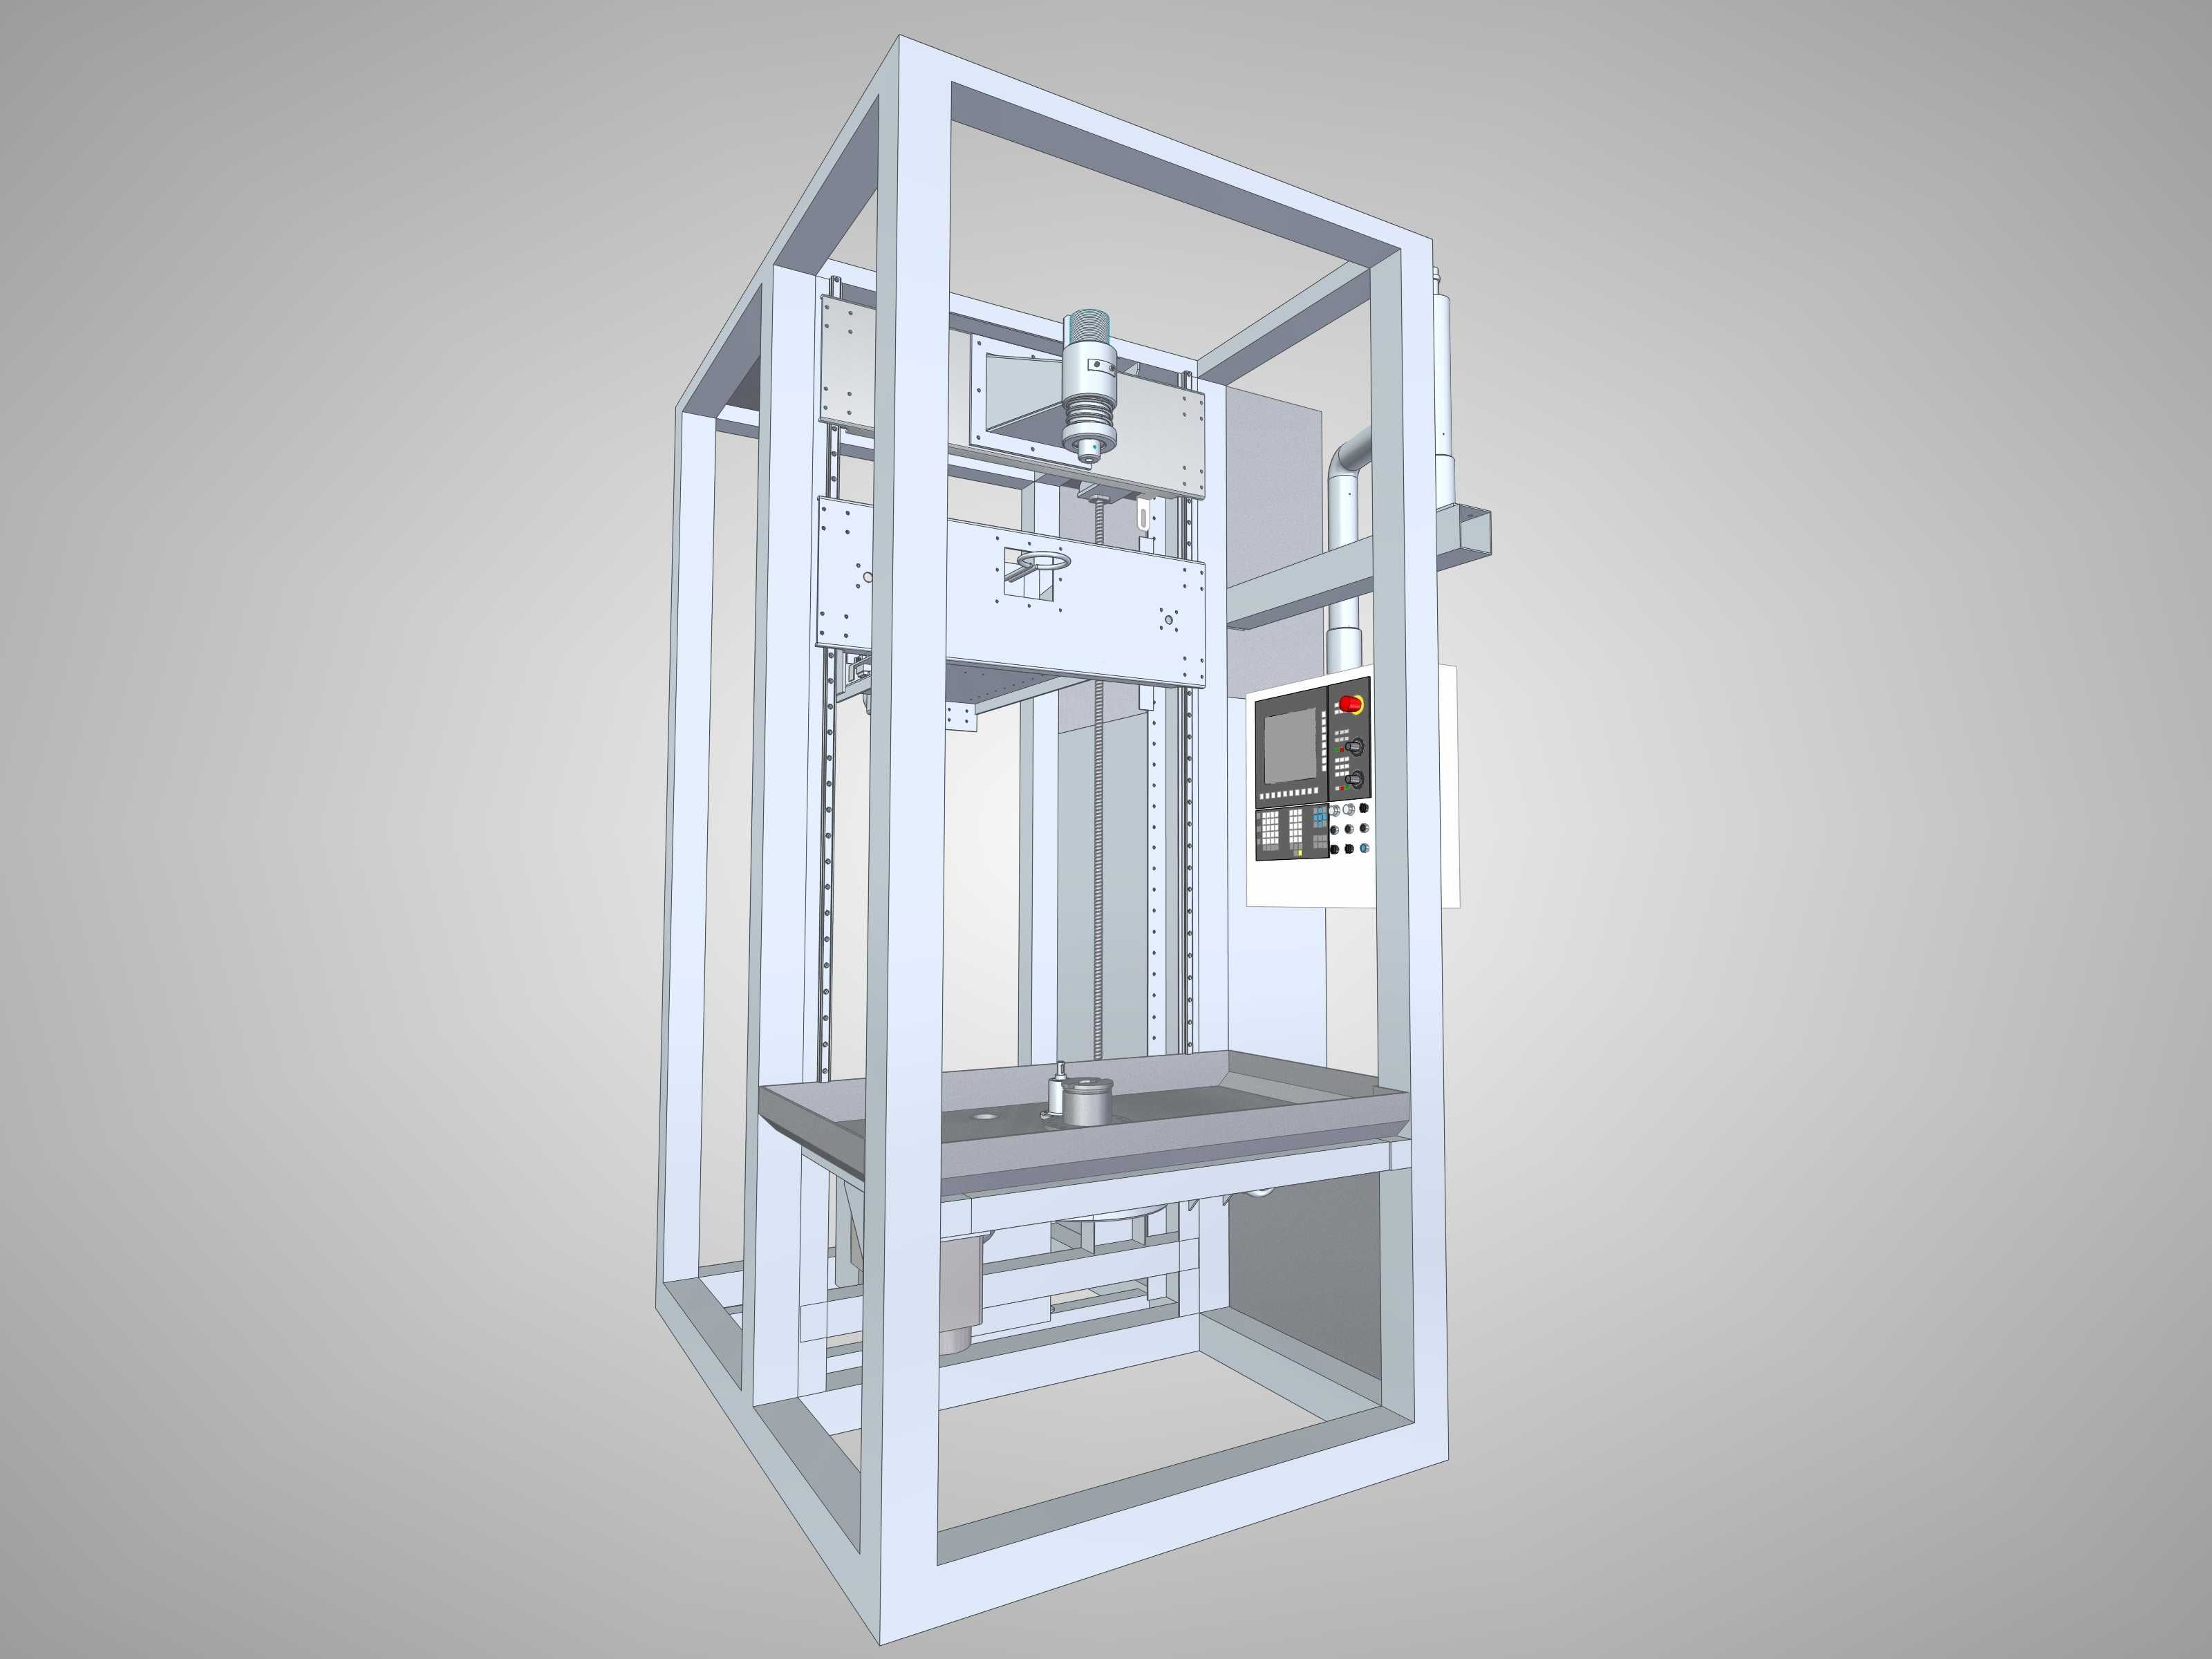 Projekty CAD 3D / Solid Edge / Dokumentacja techniczna